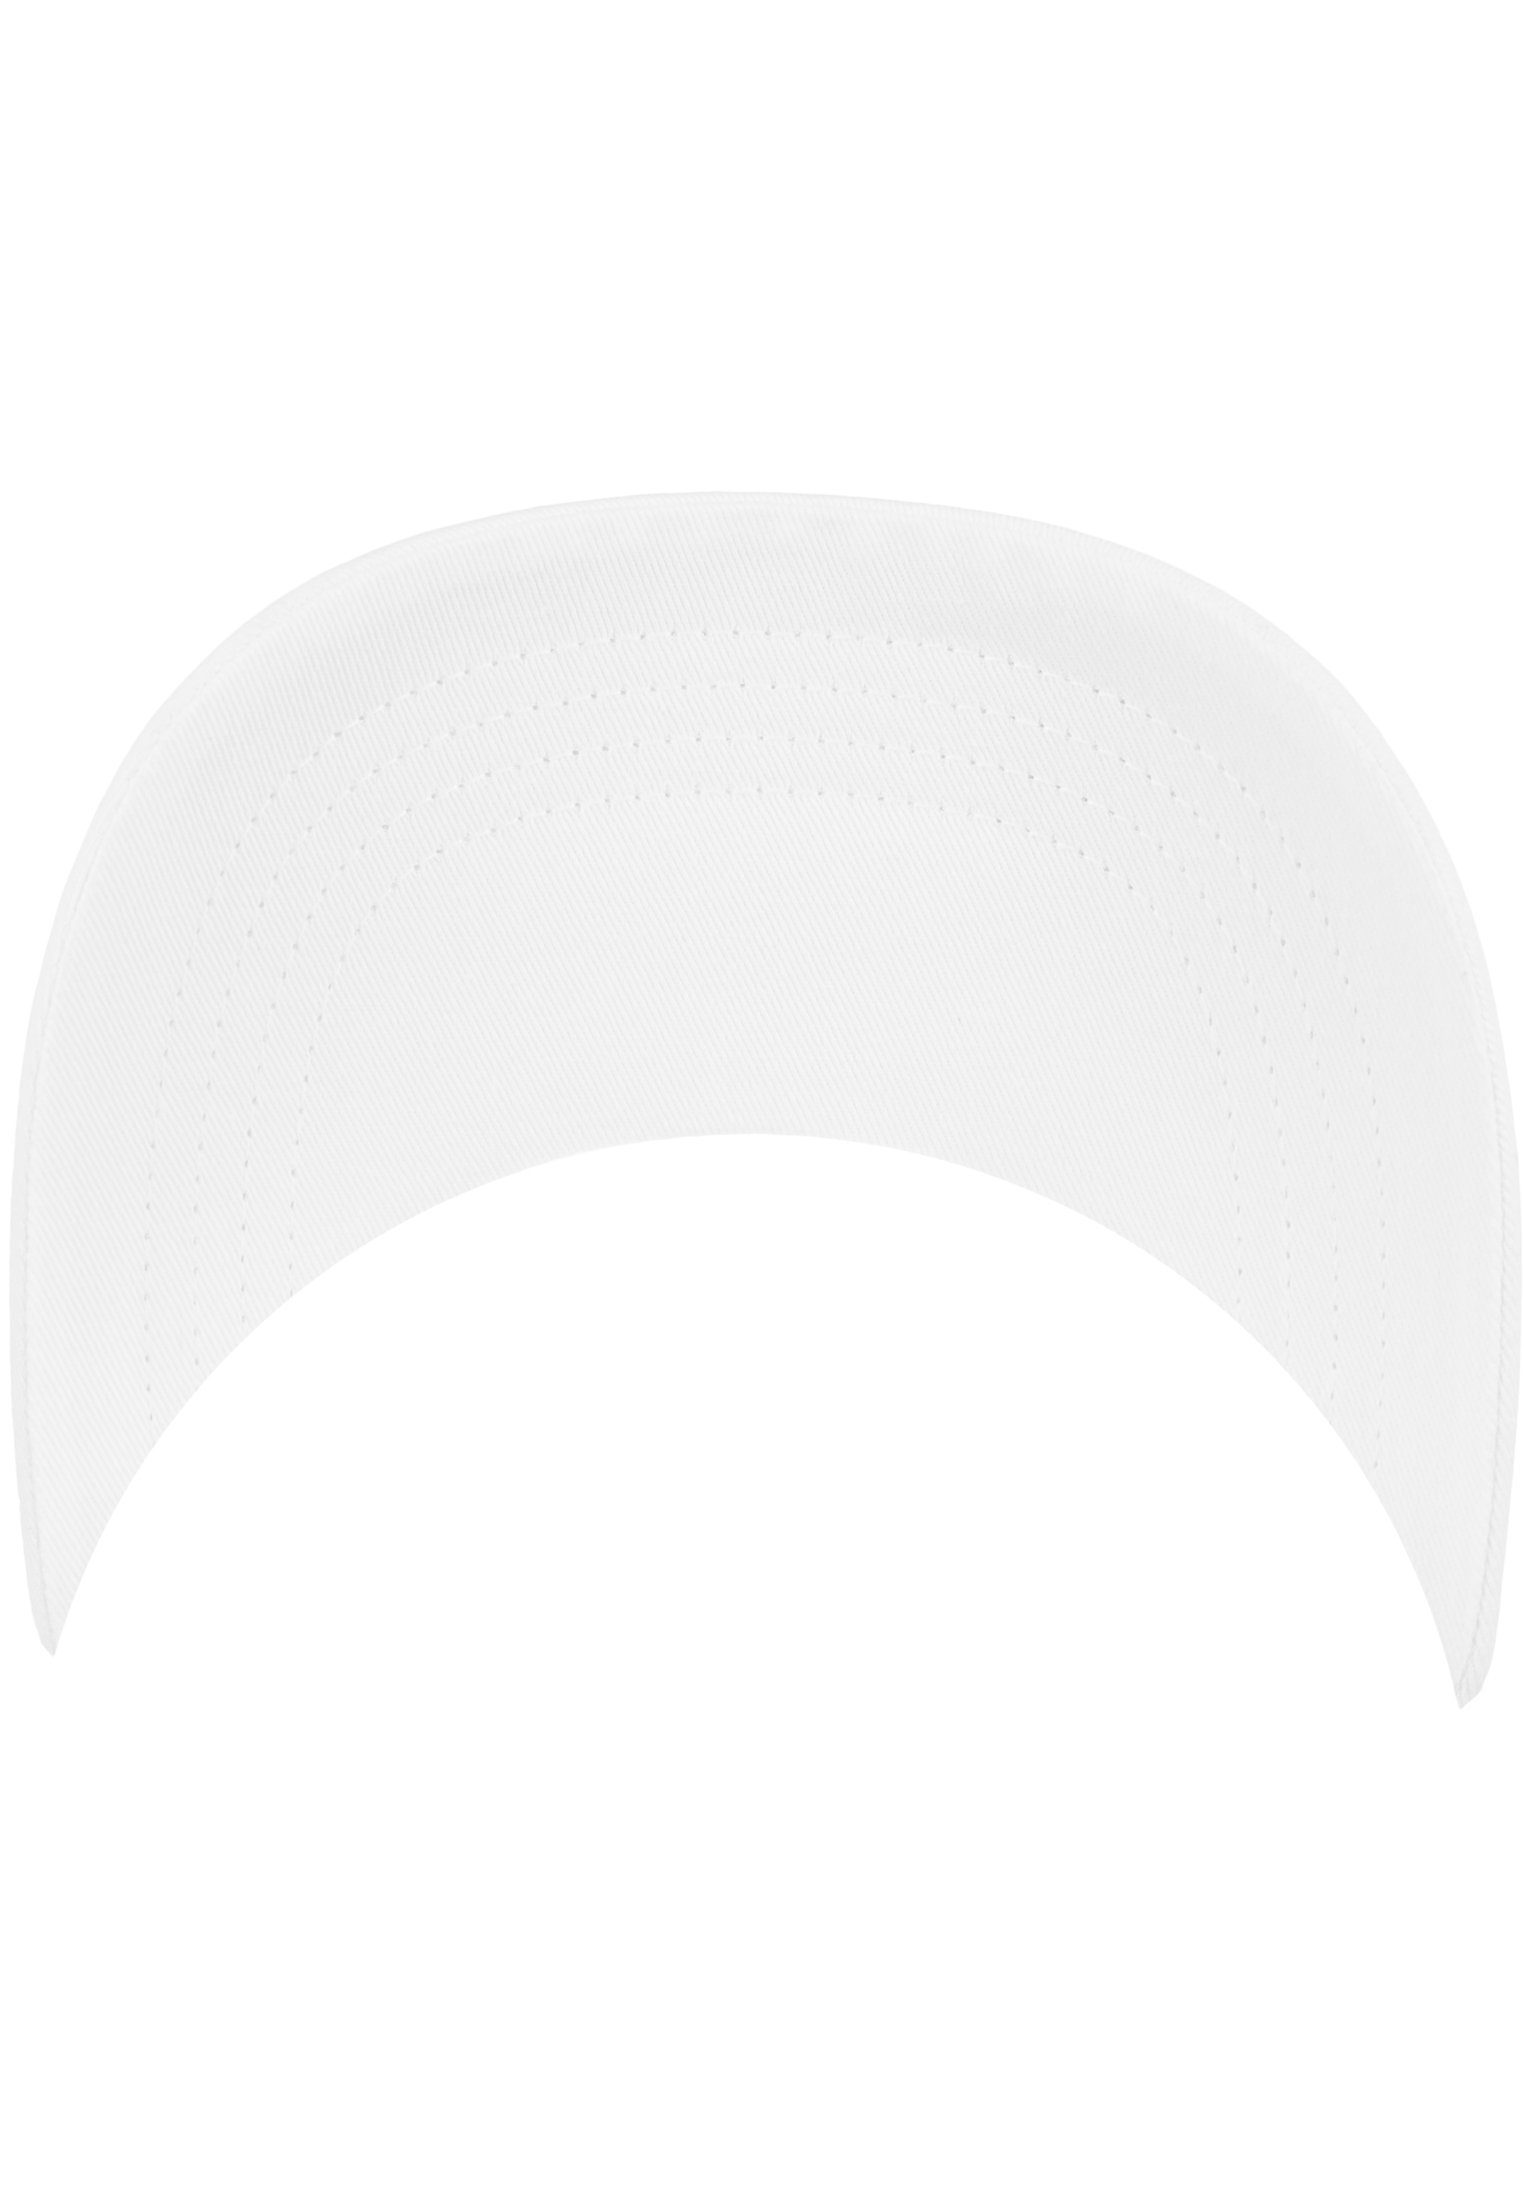 Flexfit Flex Cap Flexfit 6245CM Profile Twill Cotton Low White